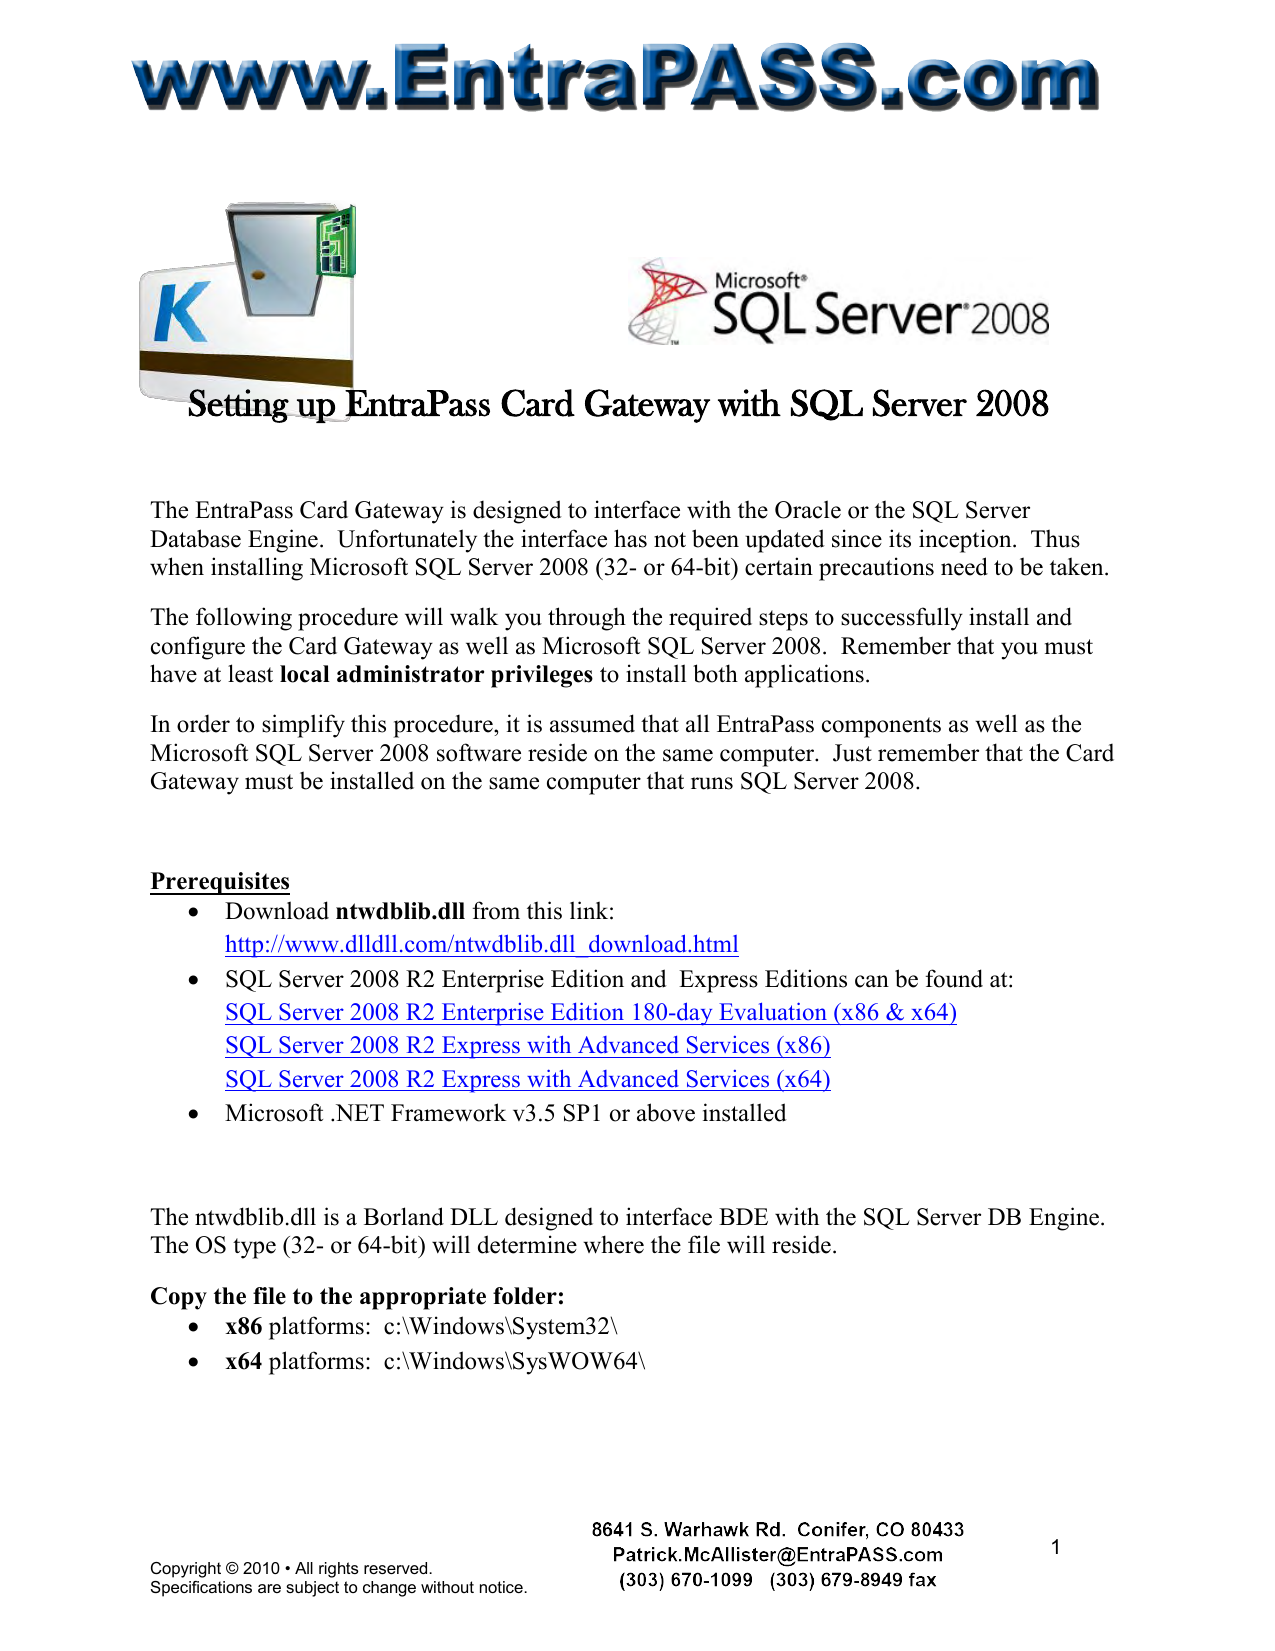 download sql server 2008 r2 express for windows 7 64 bit